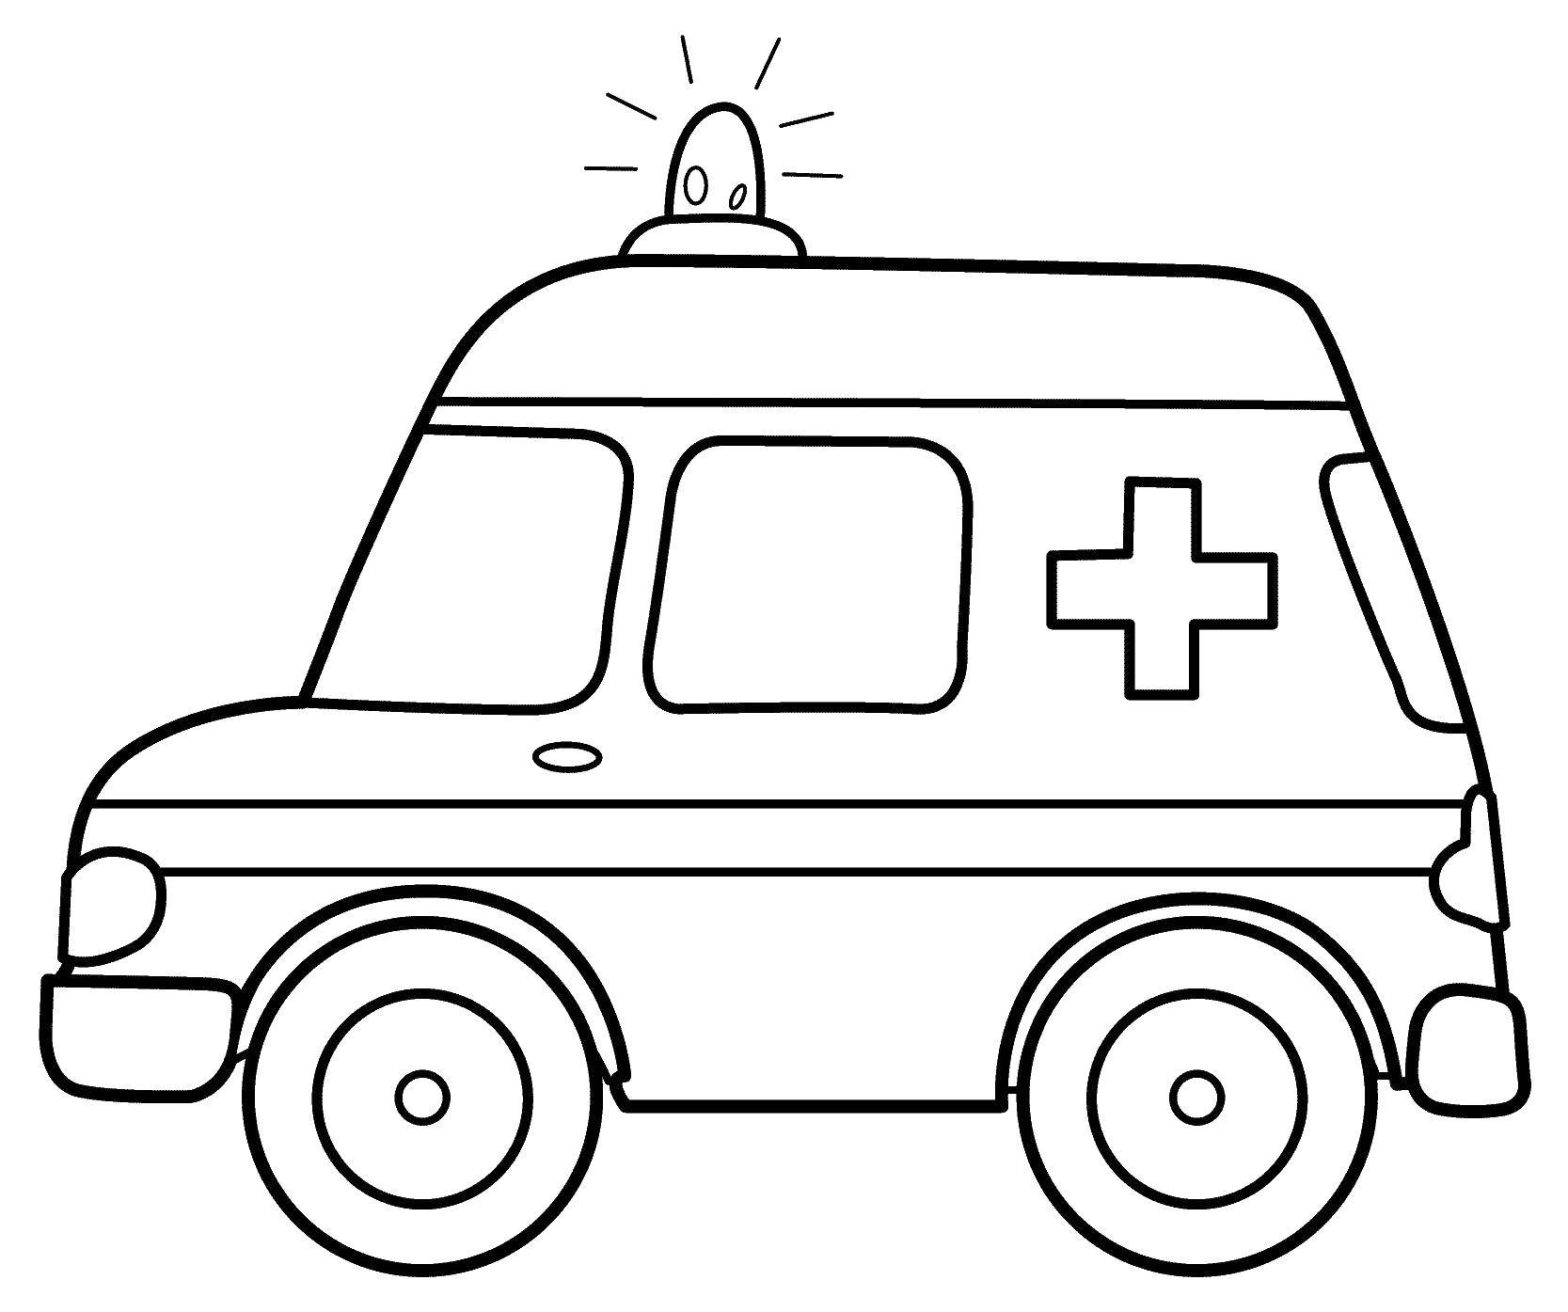 Раскраска на тему скорой помощи и транспорта для детей